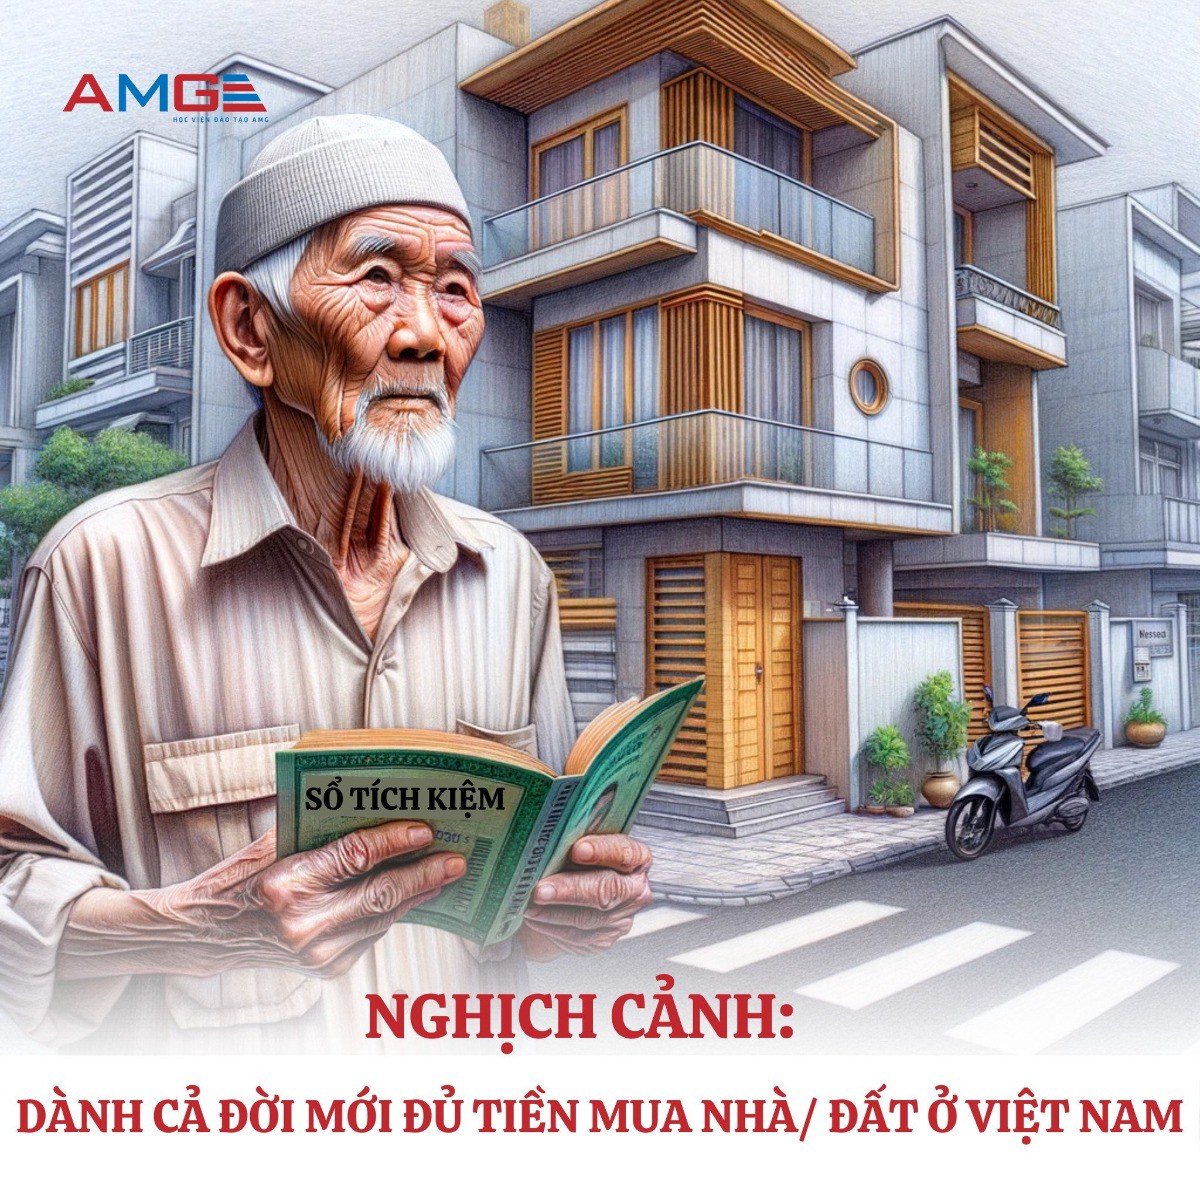 Đi làm còng lưng 45 năm mới đủ tiền mua nhà ở Hà Nội